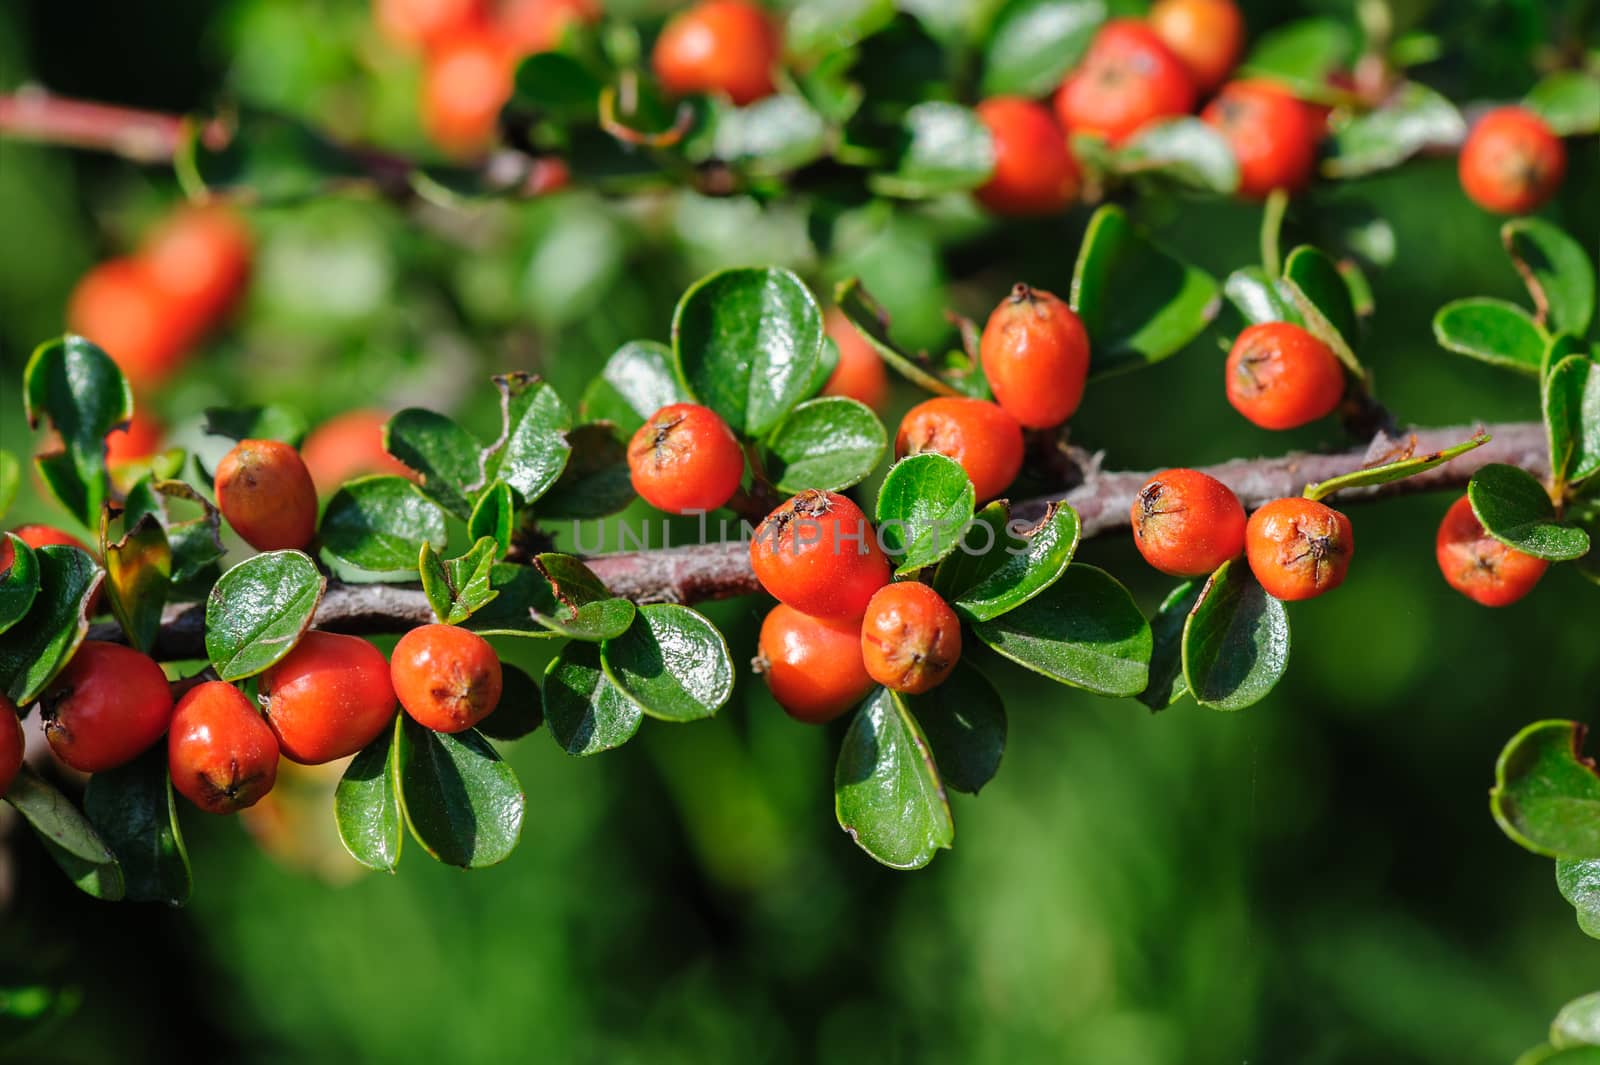 Red berries of Cotoneaster bush, closeup, selective focus